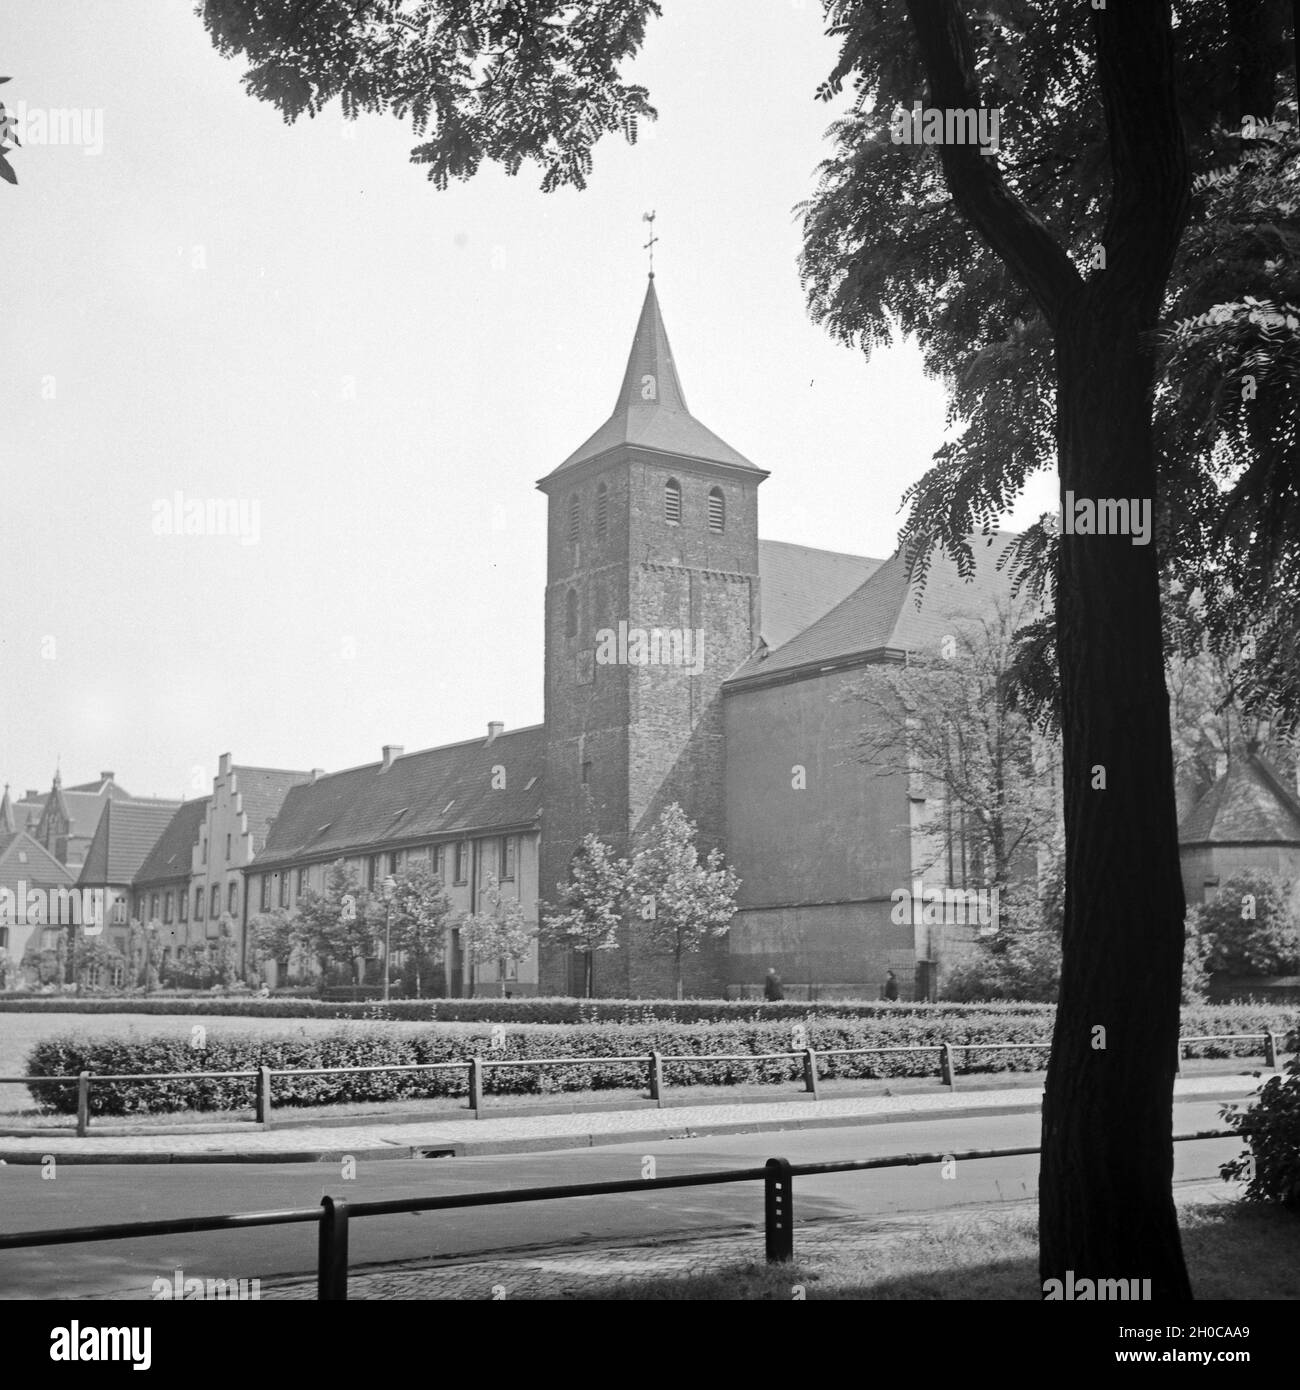 Die Abtei der Rrämonstratenser in Duisburg Alt Hamborn, Deutschland 1930er Jahre. Premonstratensian abbey at Duisburg Alt Hamborn, Germany 1930s. Stock Photo